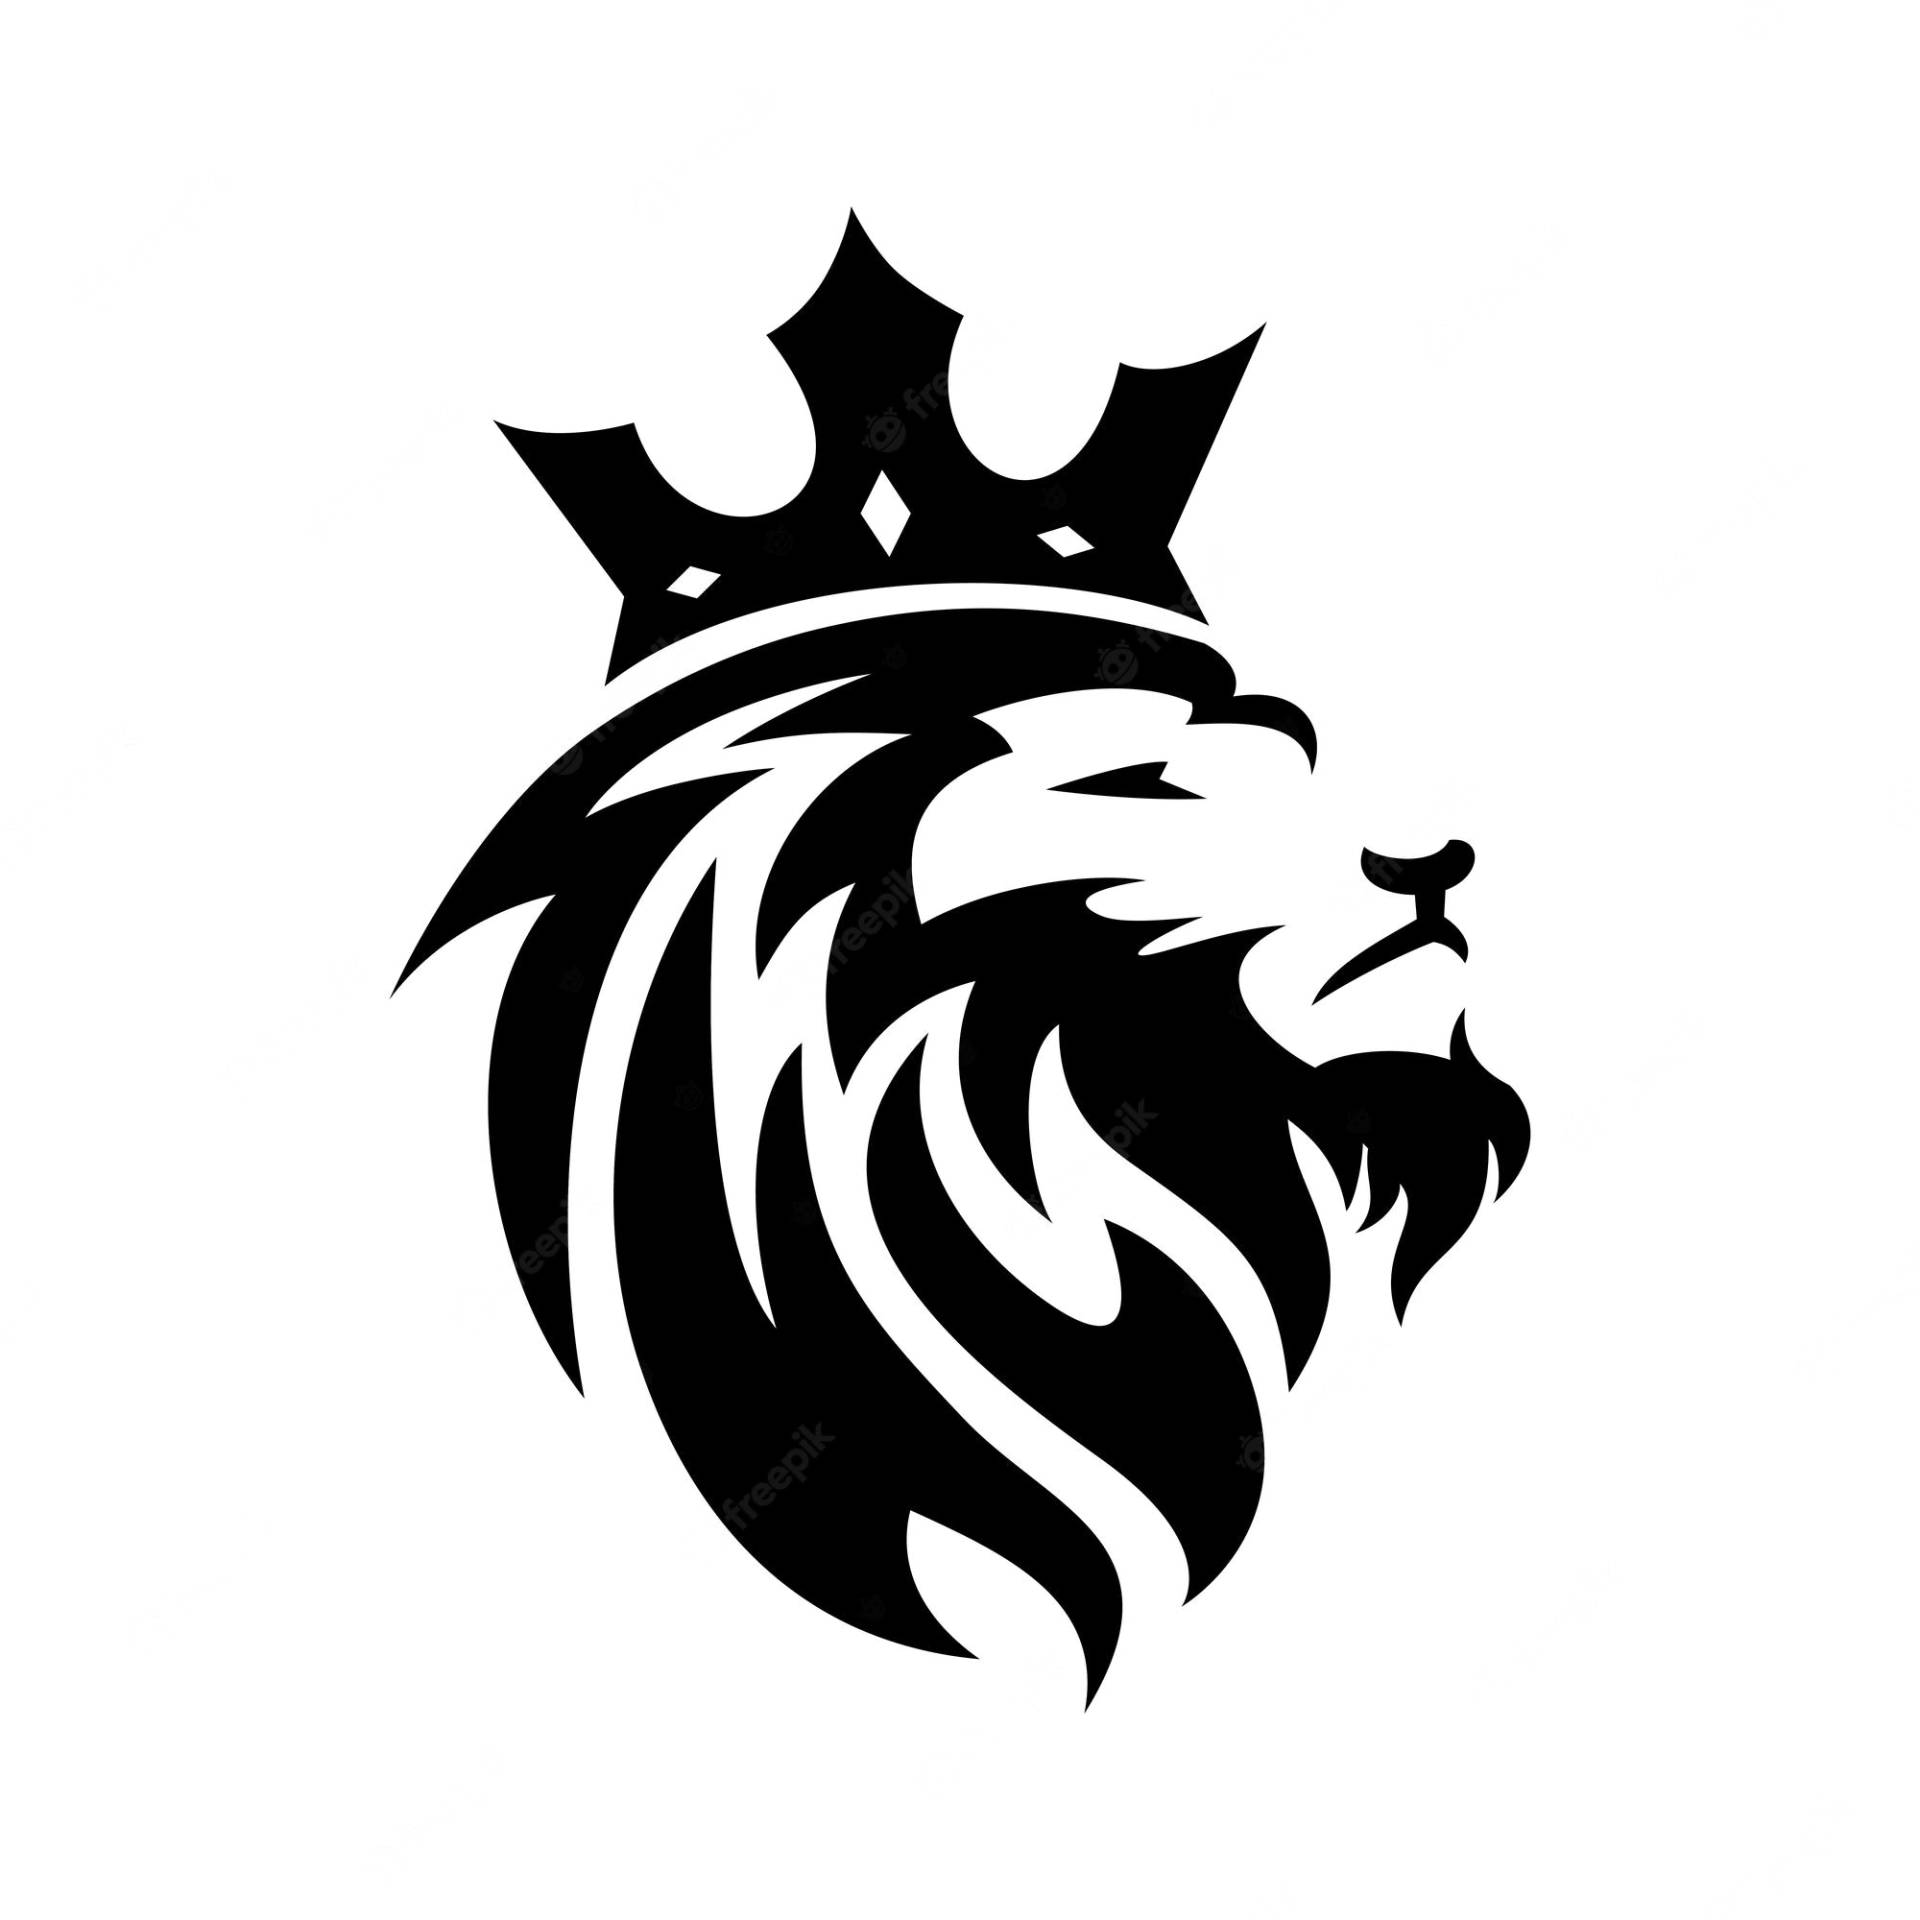 Free King Logo Wallpaper Downloads, [100+] King Logo Wallpapers for FREE |  